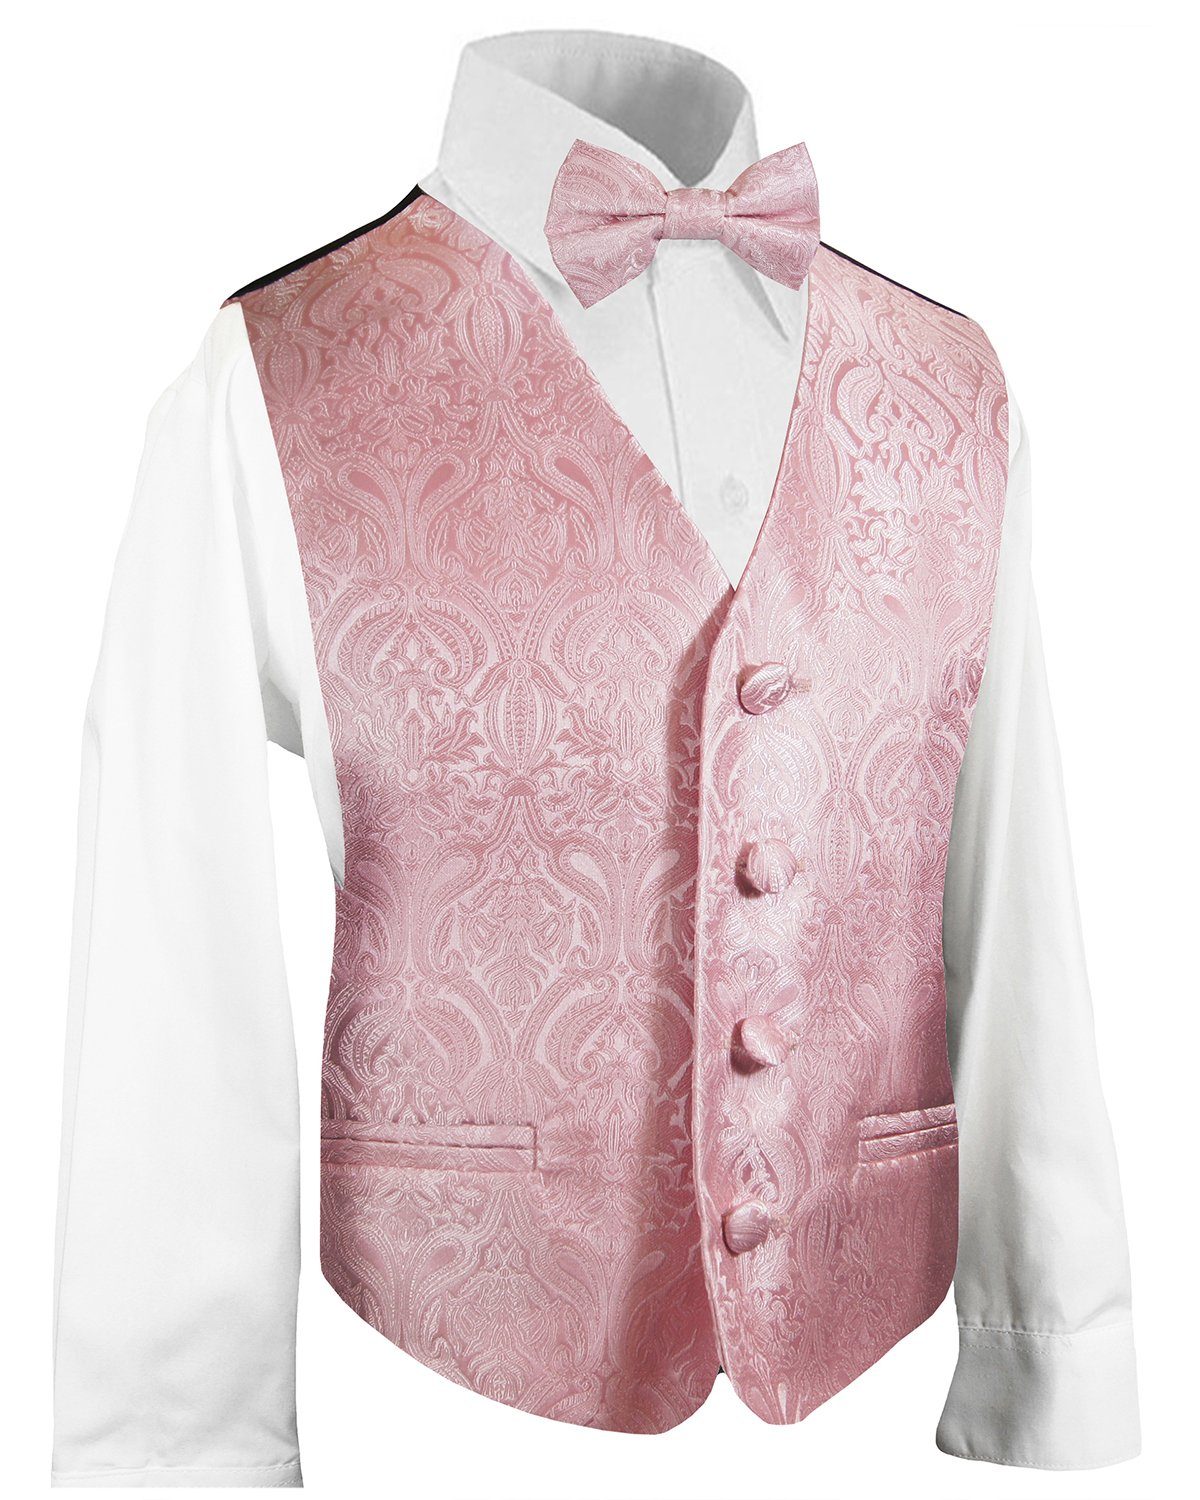 MRULIC Baby Junge Bowtie Gentleman Weste T-Shirt Hosen Hochzeit Anzug Tuch Sets